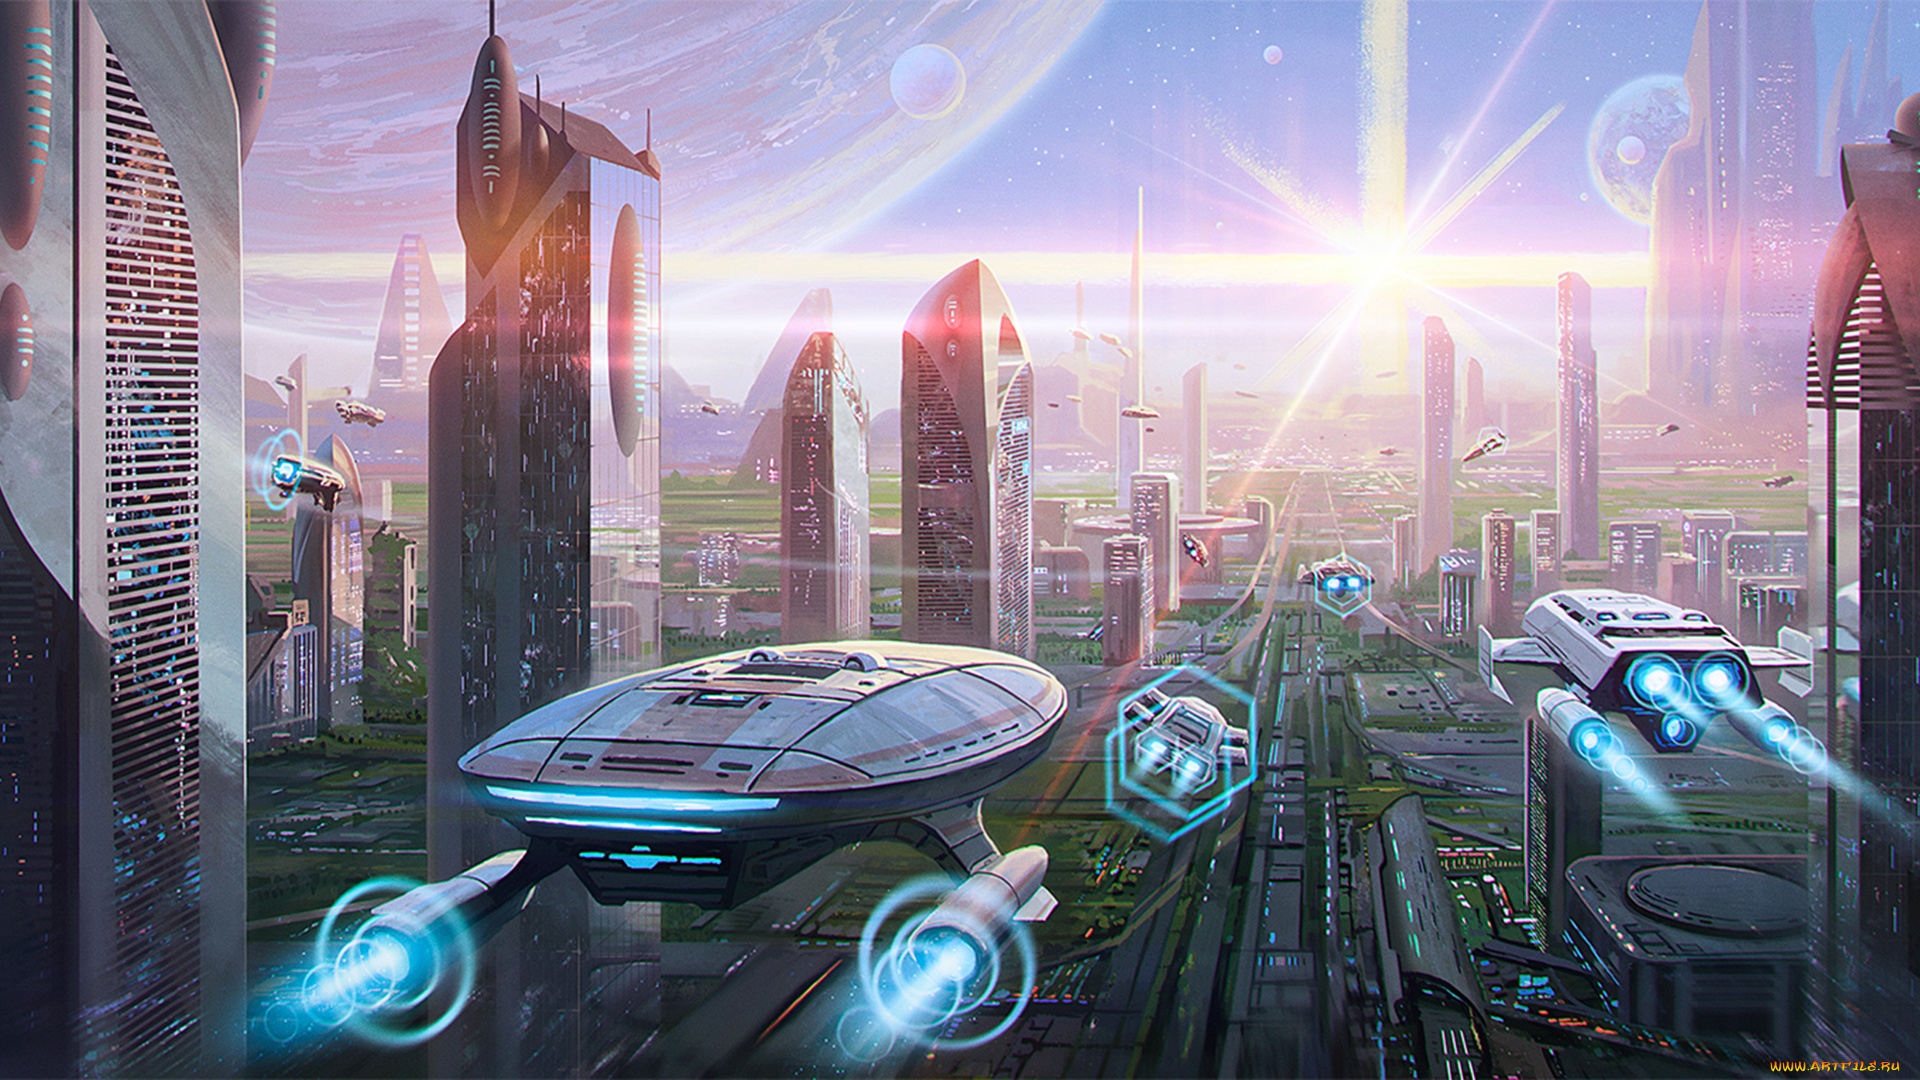 Человек 2100 года. Мир в будущем. Футуристический город. Город будущего. Космический город будущего.